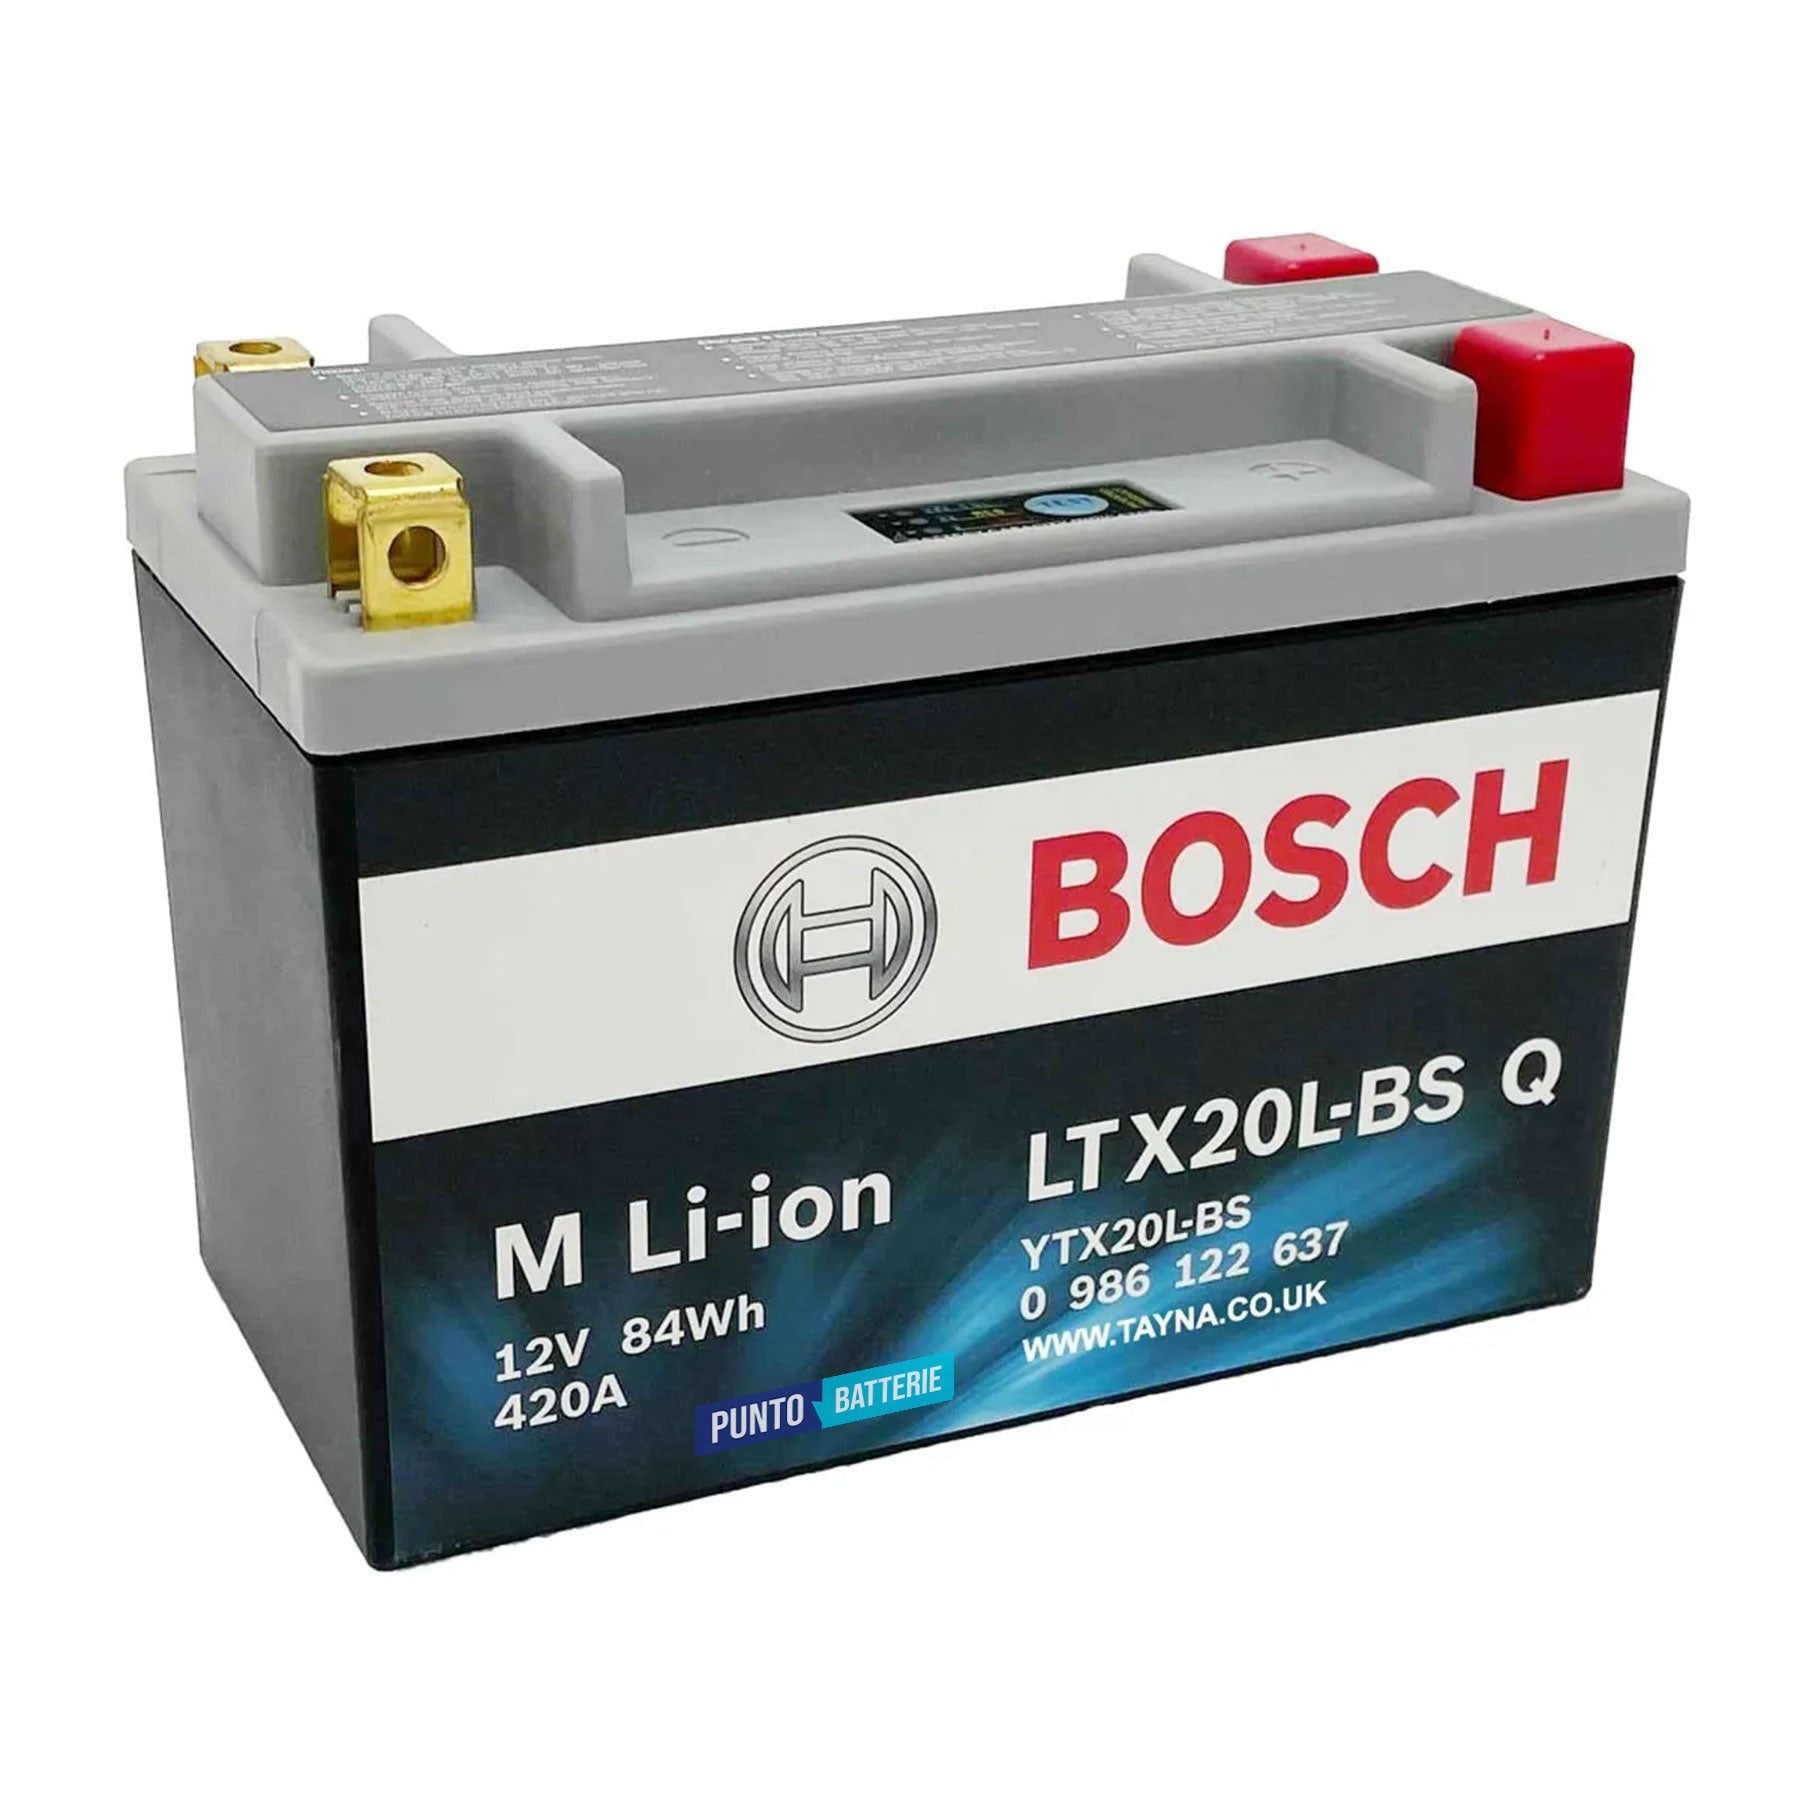 Batteria originale Bosch M Li-ion LTX20L-BS, dimensioni 175 x 87 x 155, polo positivo a destra e sinistra, 12 volt, 7 amperora, 420 ampere. Batteria per moto, scooter e powersport.